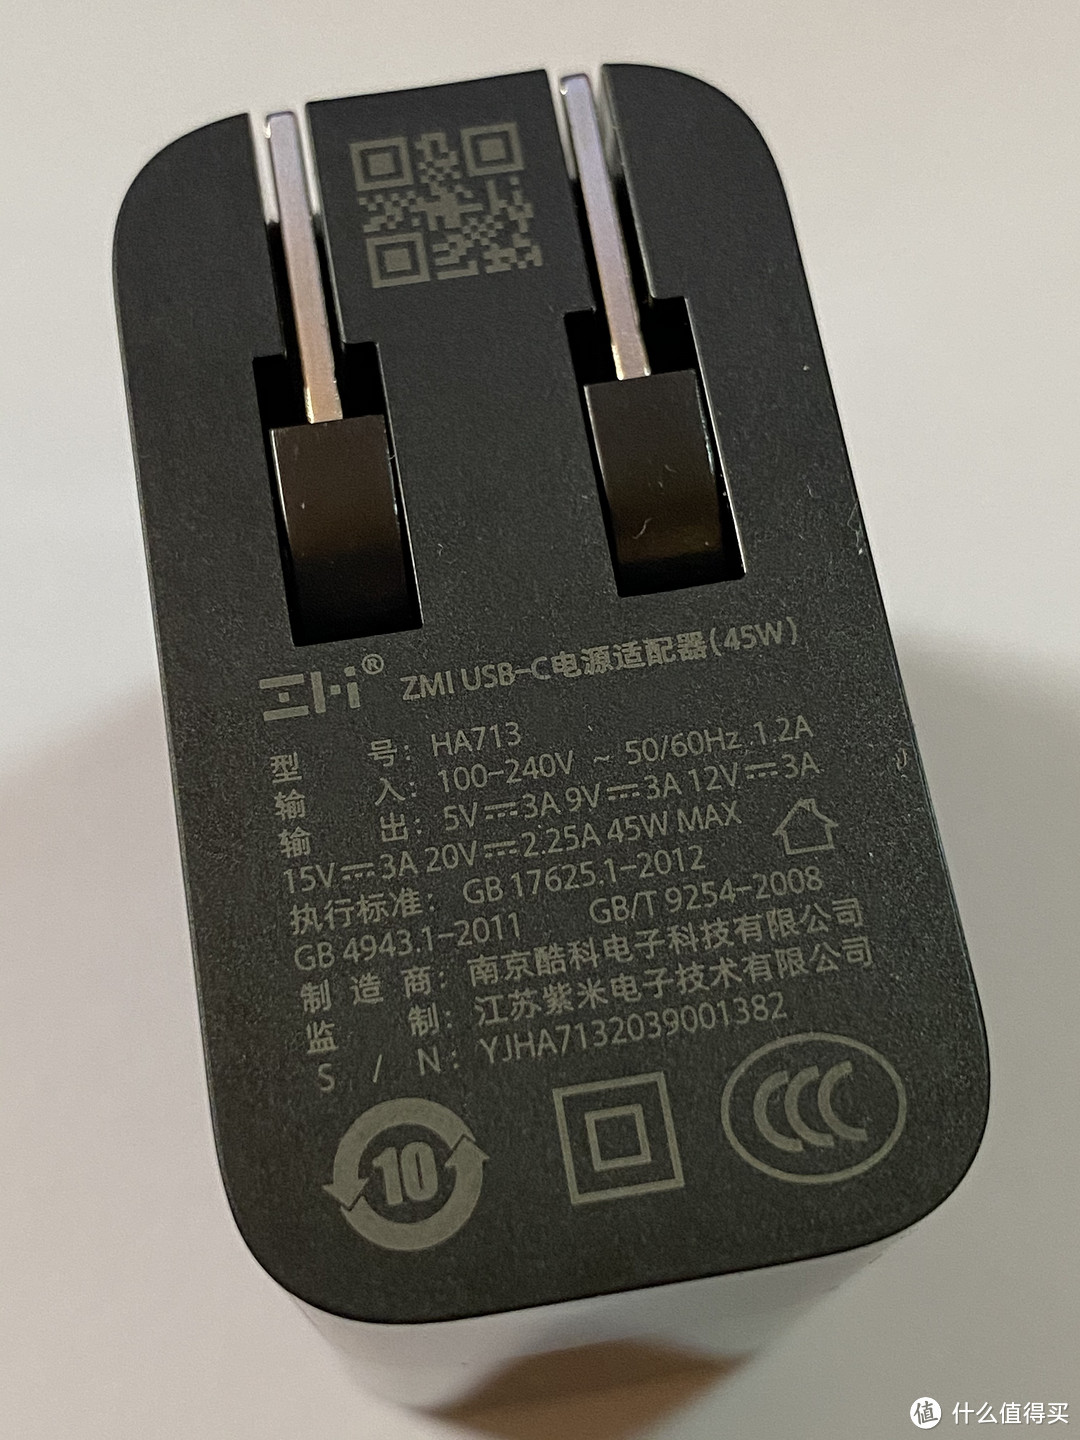 ZMI USB-C电源适配器45W（套装版）上手及简测